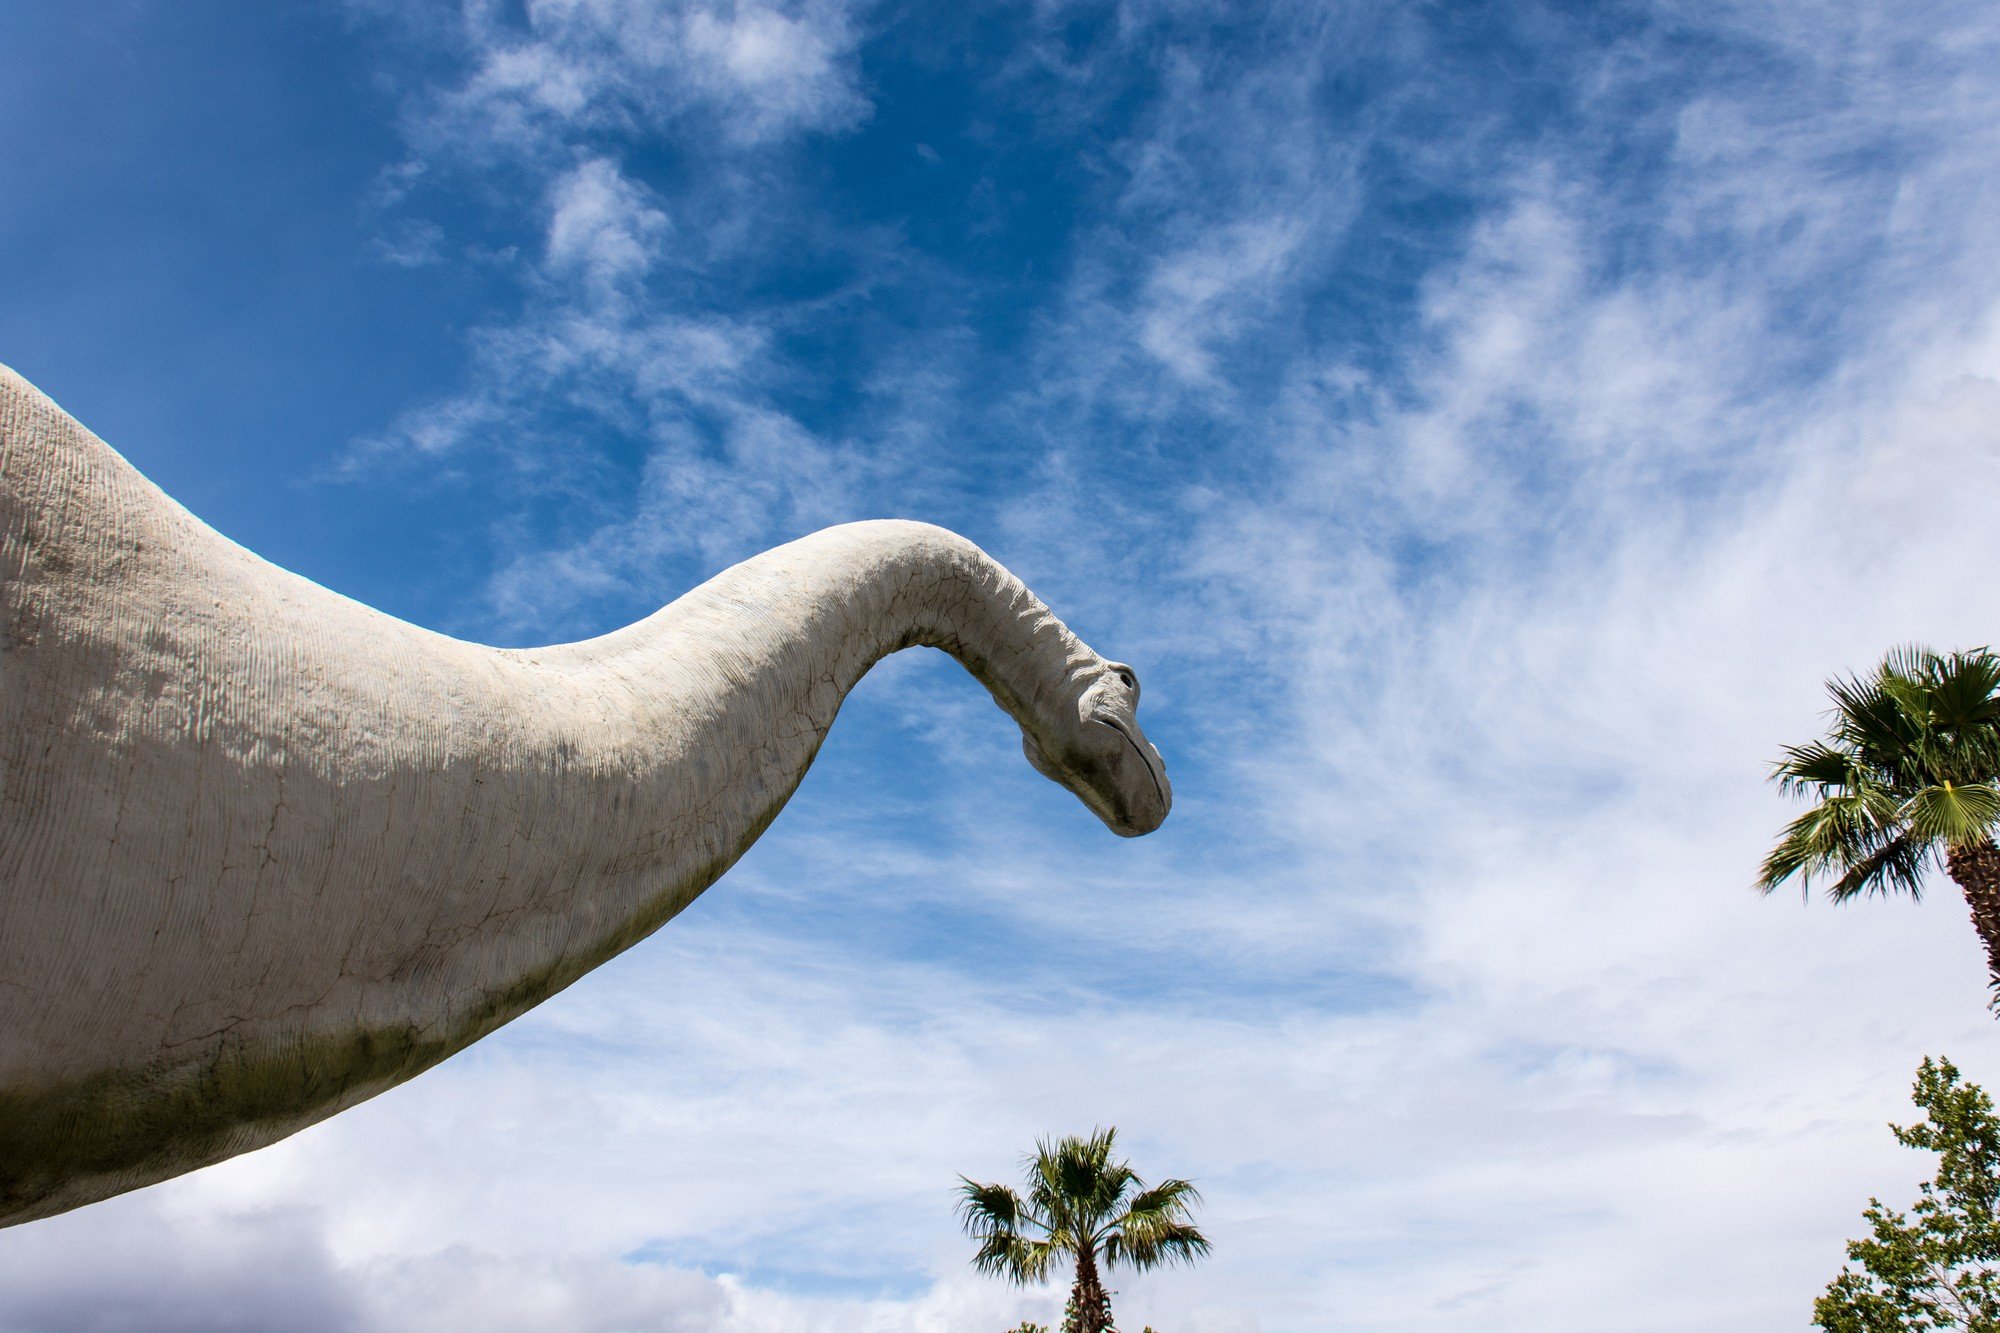 Cabazon Dinosaur Museum near Palm Springs, CA